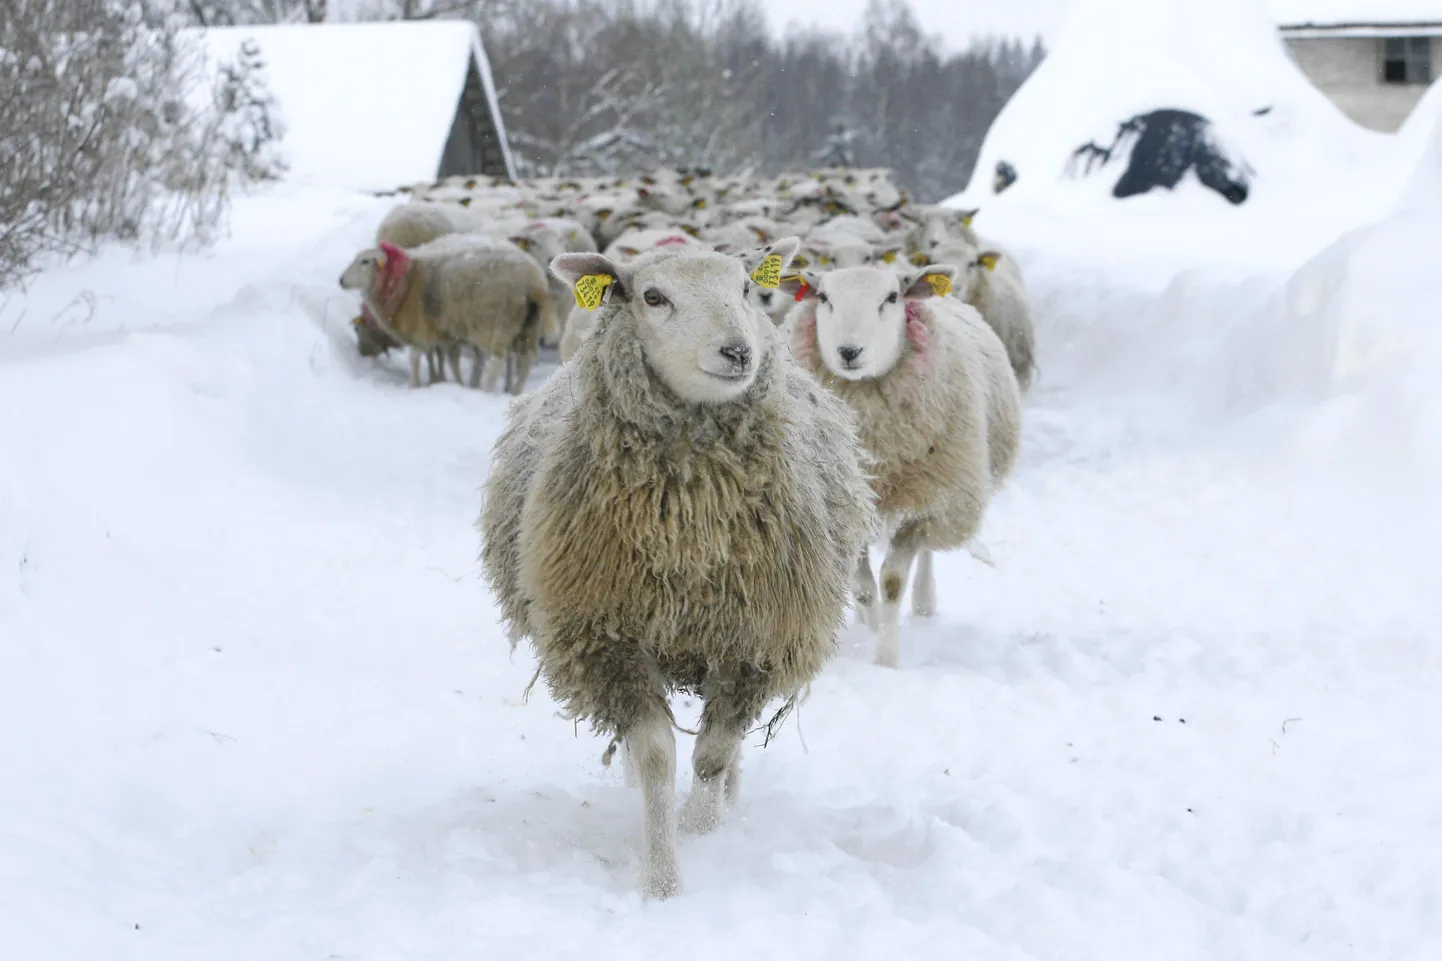 Palju lambapäid karges talveõhus — see on Murese tõukari Raassilla külas.